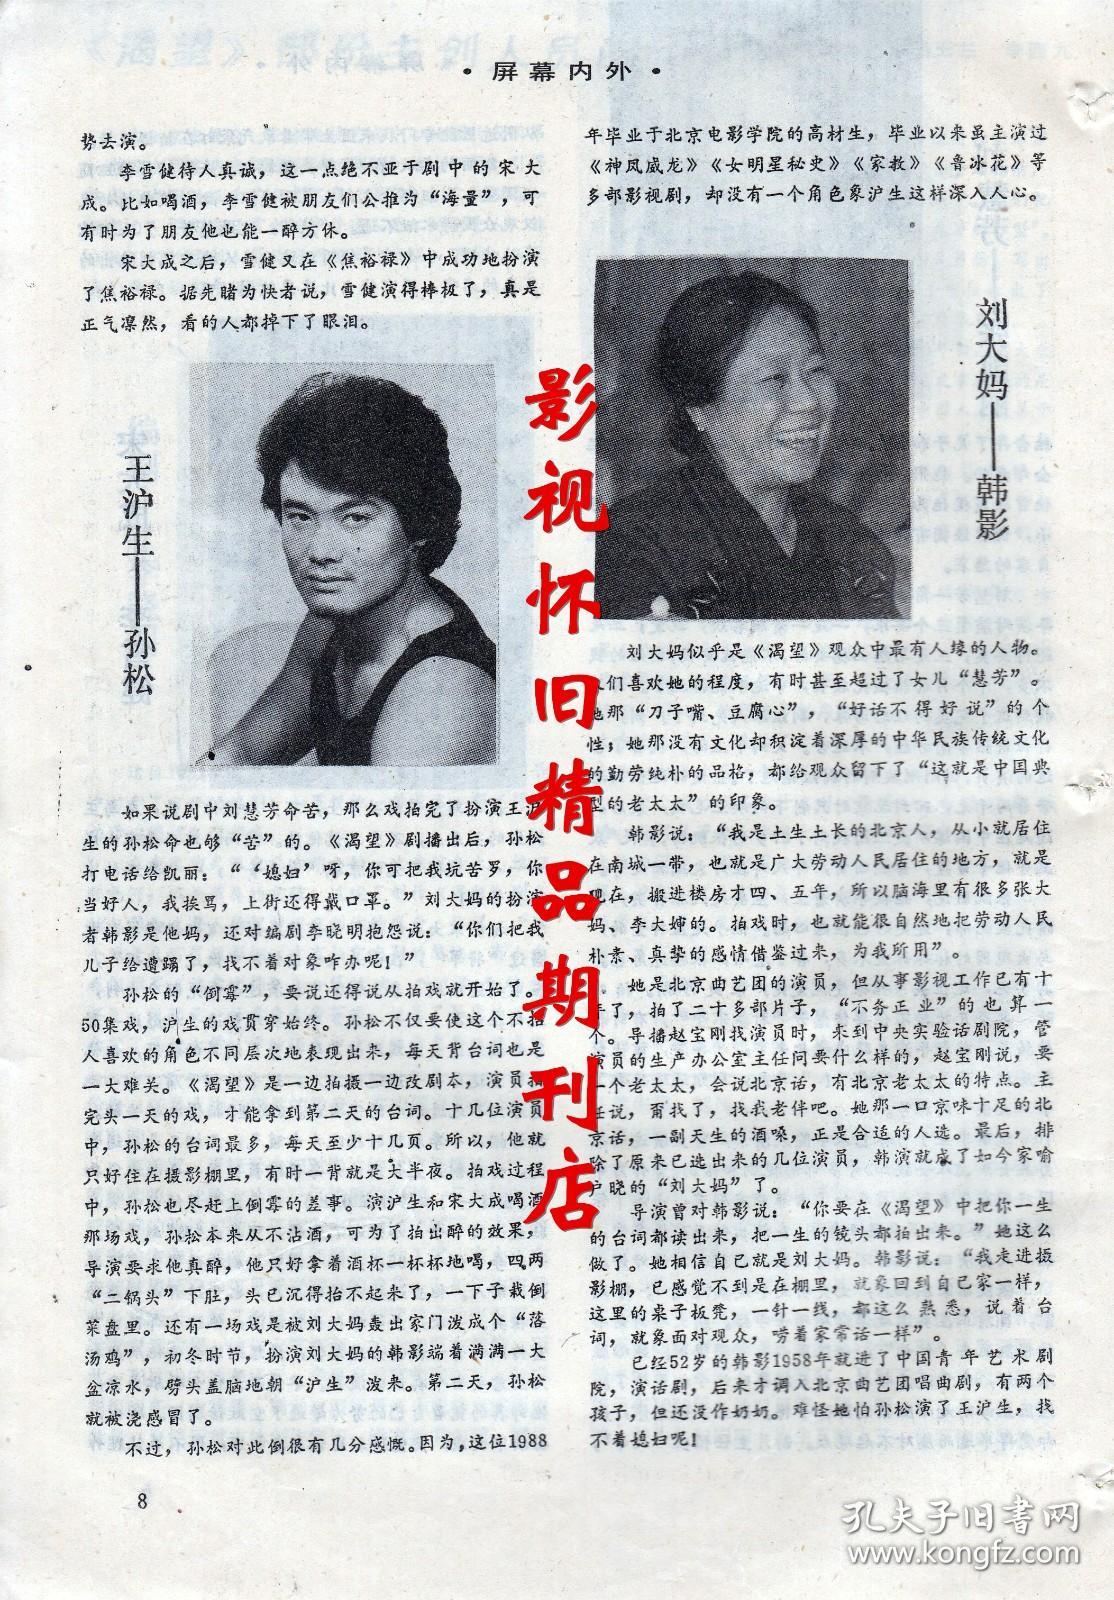 电视月刊 1991年2期  寇世勋米雪温碧霞王伯昭 经典剧《渴望》群星